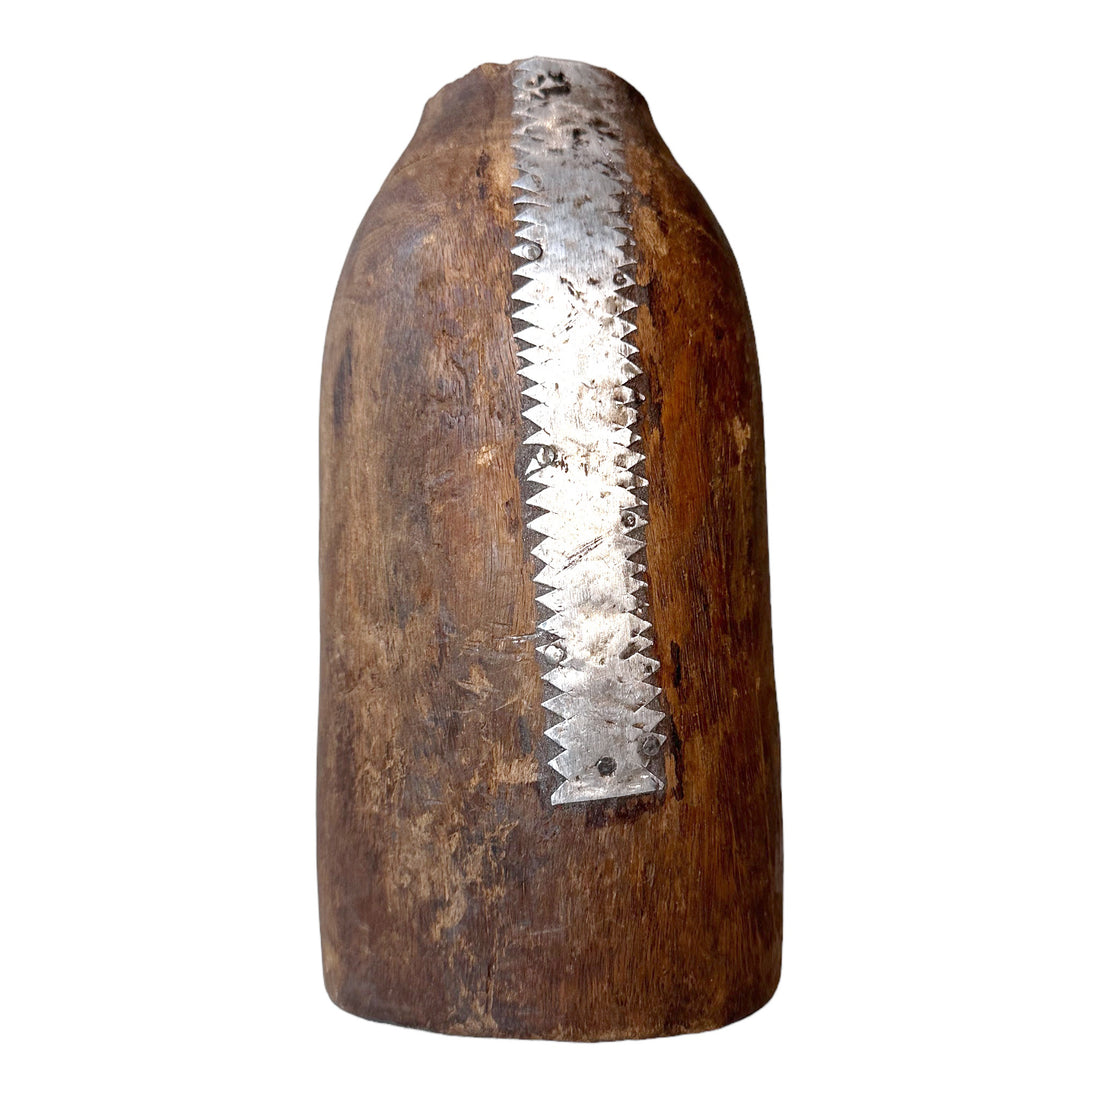 New - Tutsi Wooden Vases - Rwanda (M/L) - eyahomeliving